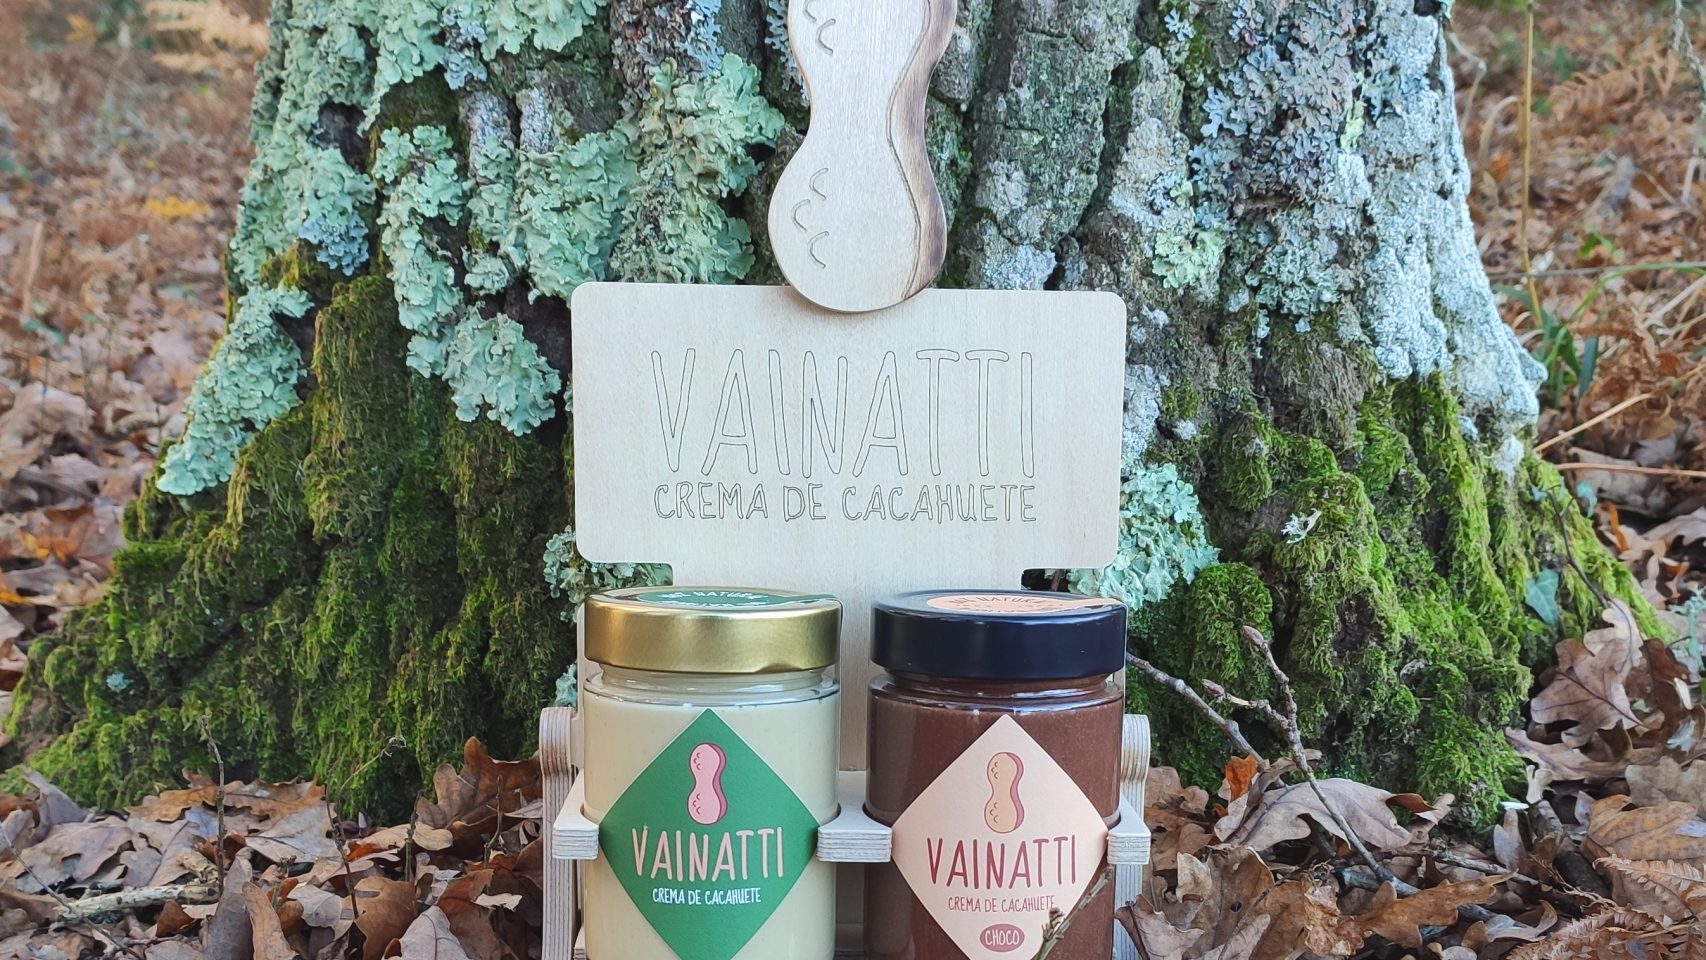 Las dos cremas de cacahuete de Vainatti, una con cacao.